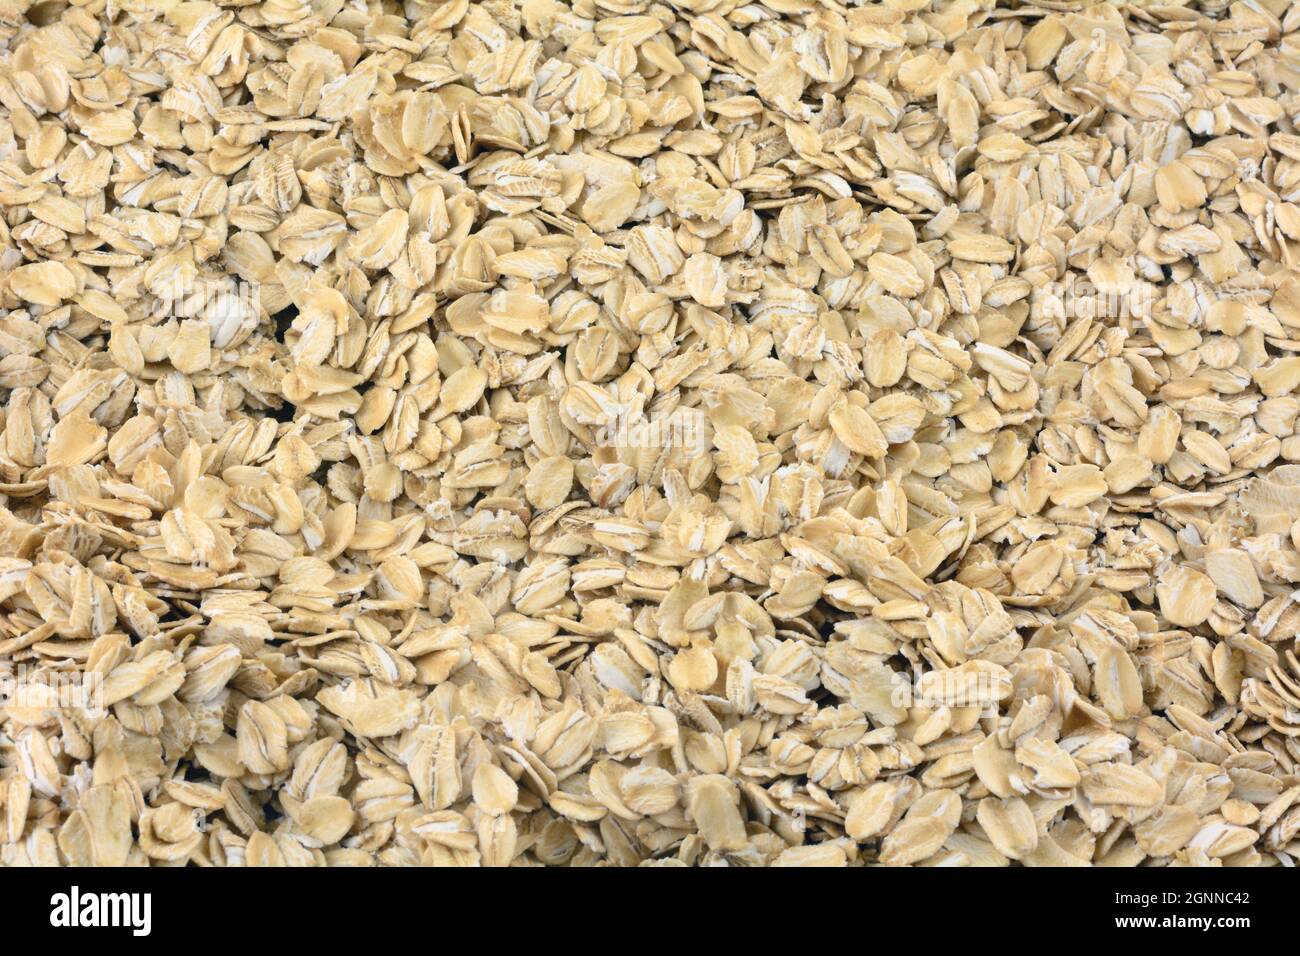 Food Hintergrund von gesunden traditionellen altmodischen gerösteten Haferflocken Getreide Stockfoto